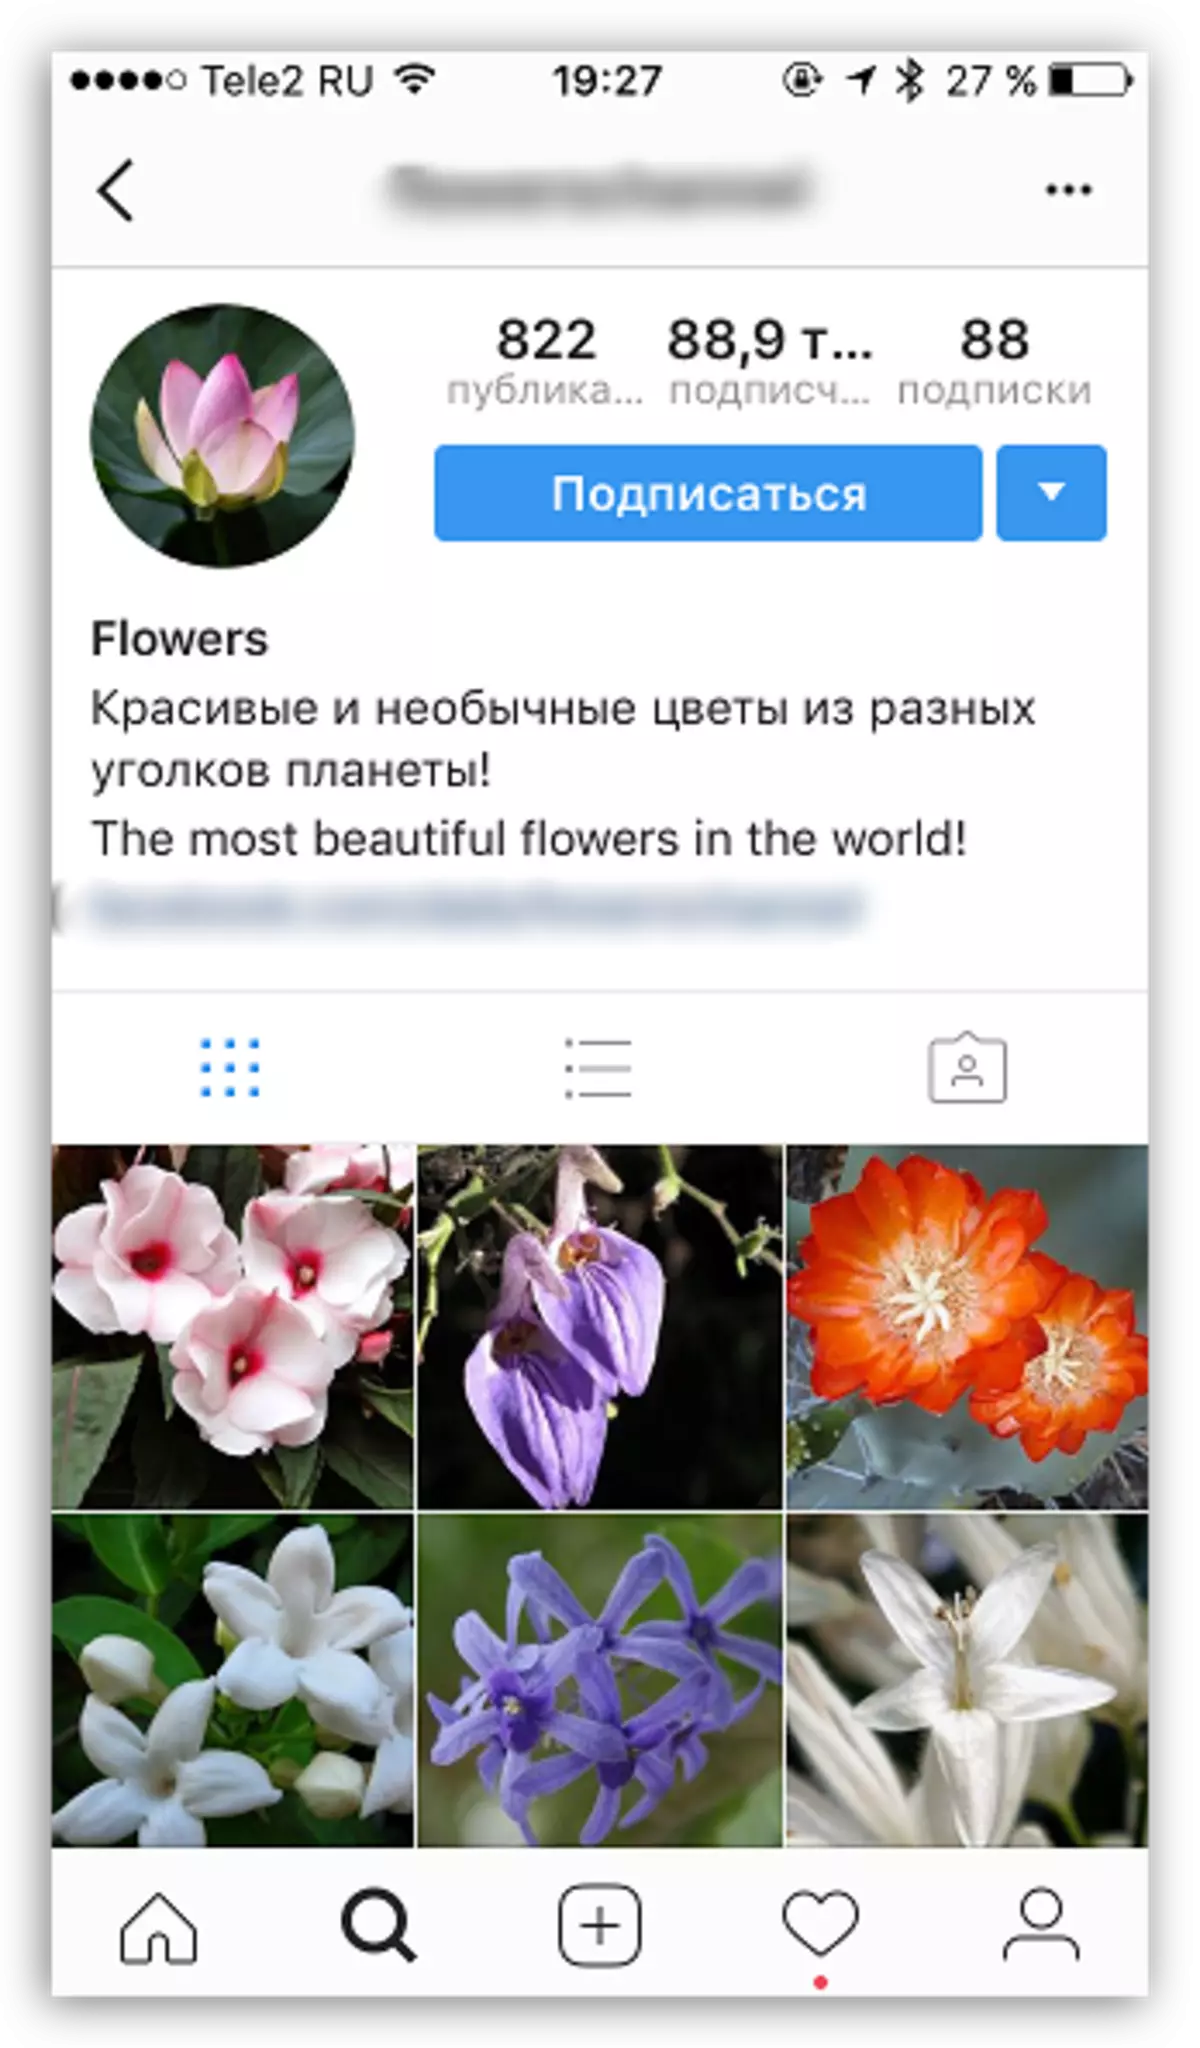 Instagram တွင်ပရိုဖိုင်းကိုမည်သို့မြှင့်တင်ရမည်နည်း